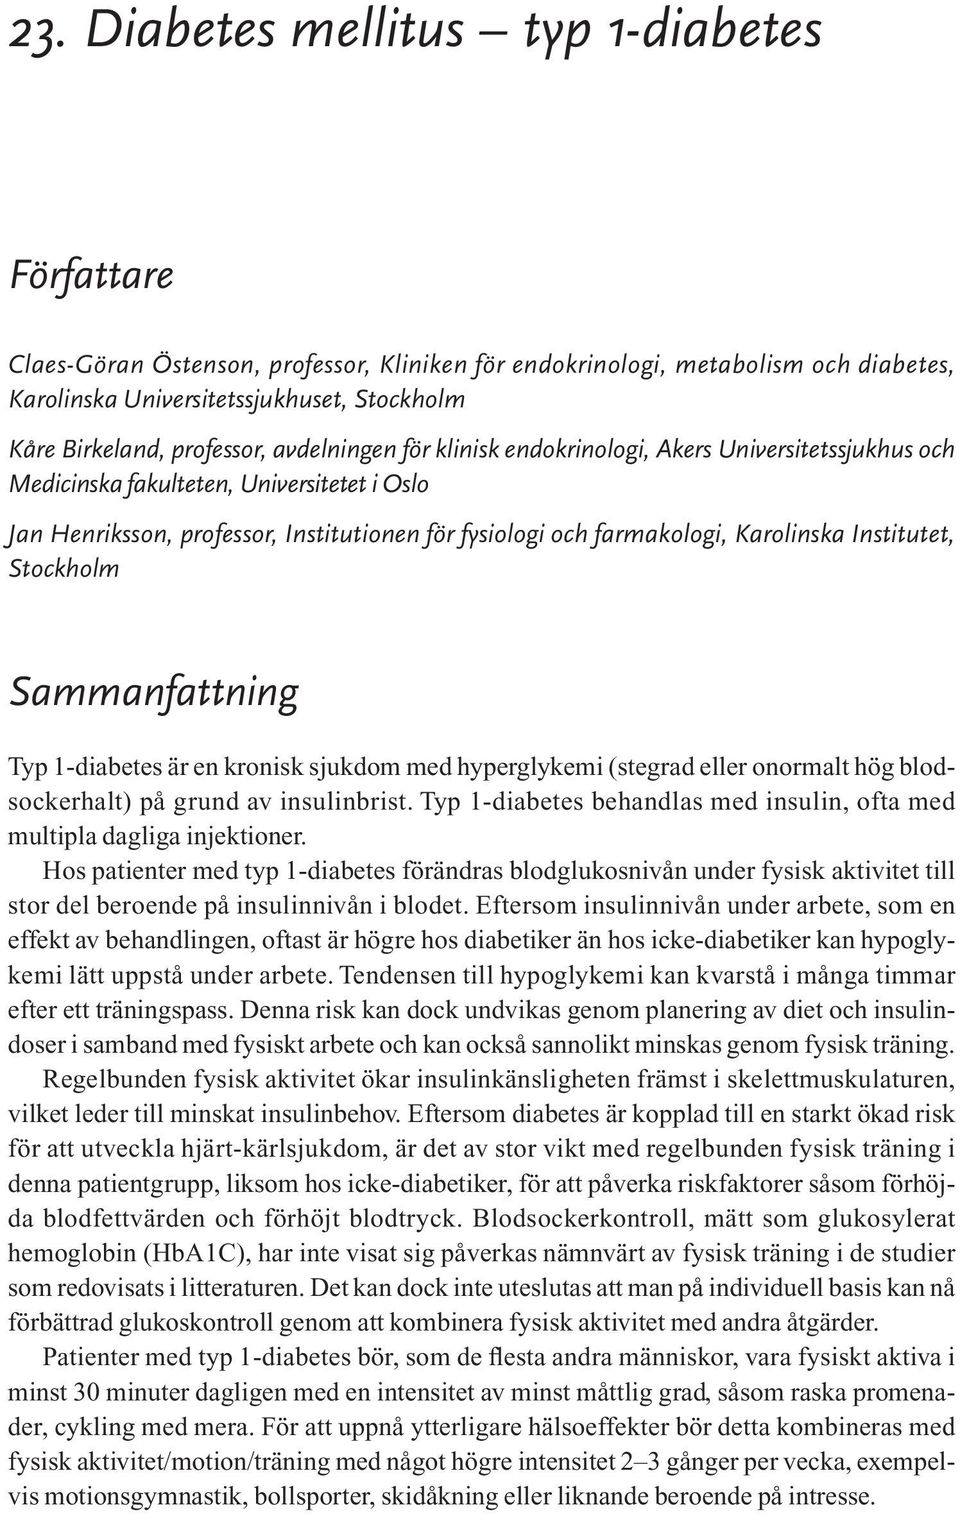 Karolinska Institutet, Stockholm Sammanfattning Typ 1-diabetes är en kronisk sjukdom med hyperglykemi (stegrad eller onormalt hög blodsockerhalt) på grund av insulinbrist.